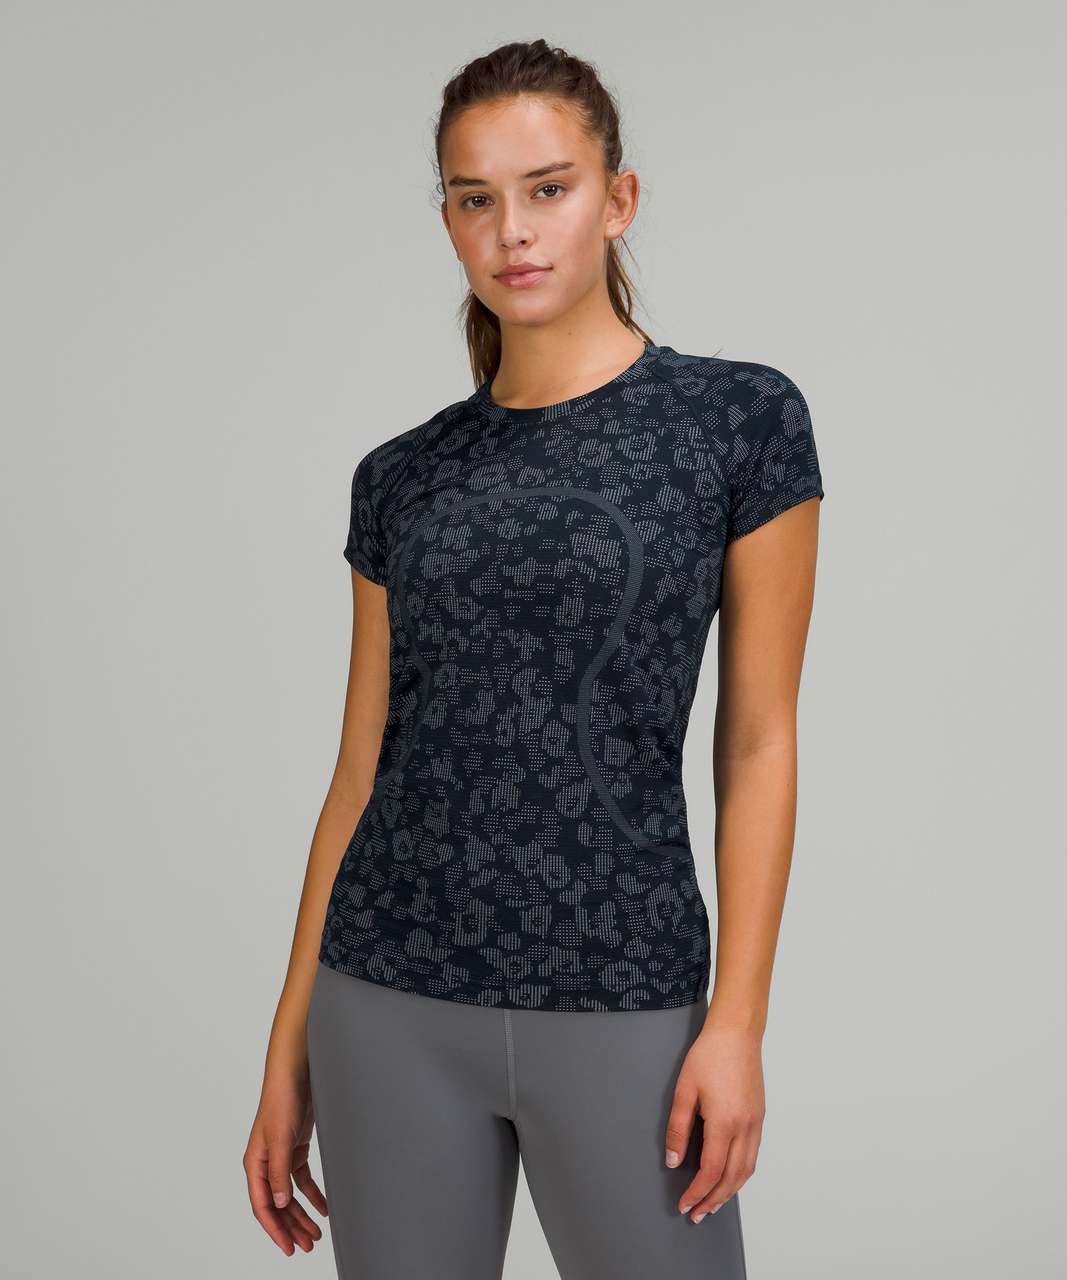 Lululemon Swiftly Tech Short Sleeve Shirt 2.0 - Dappled Floral True Navy /  Ocean Air - lulu fanatics